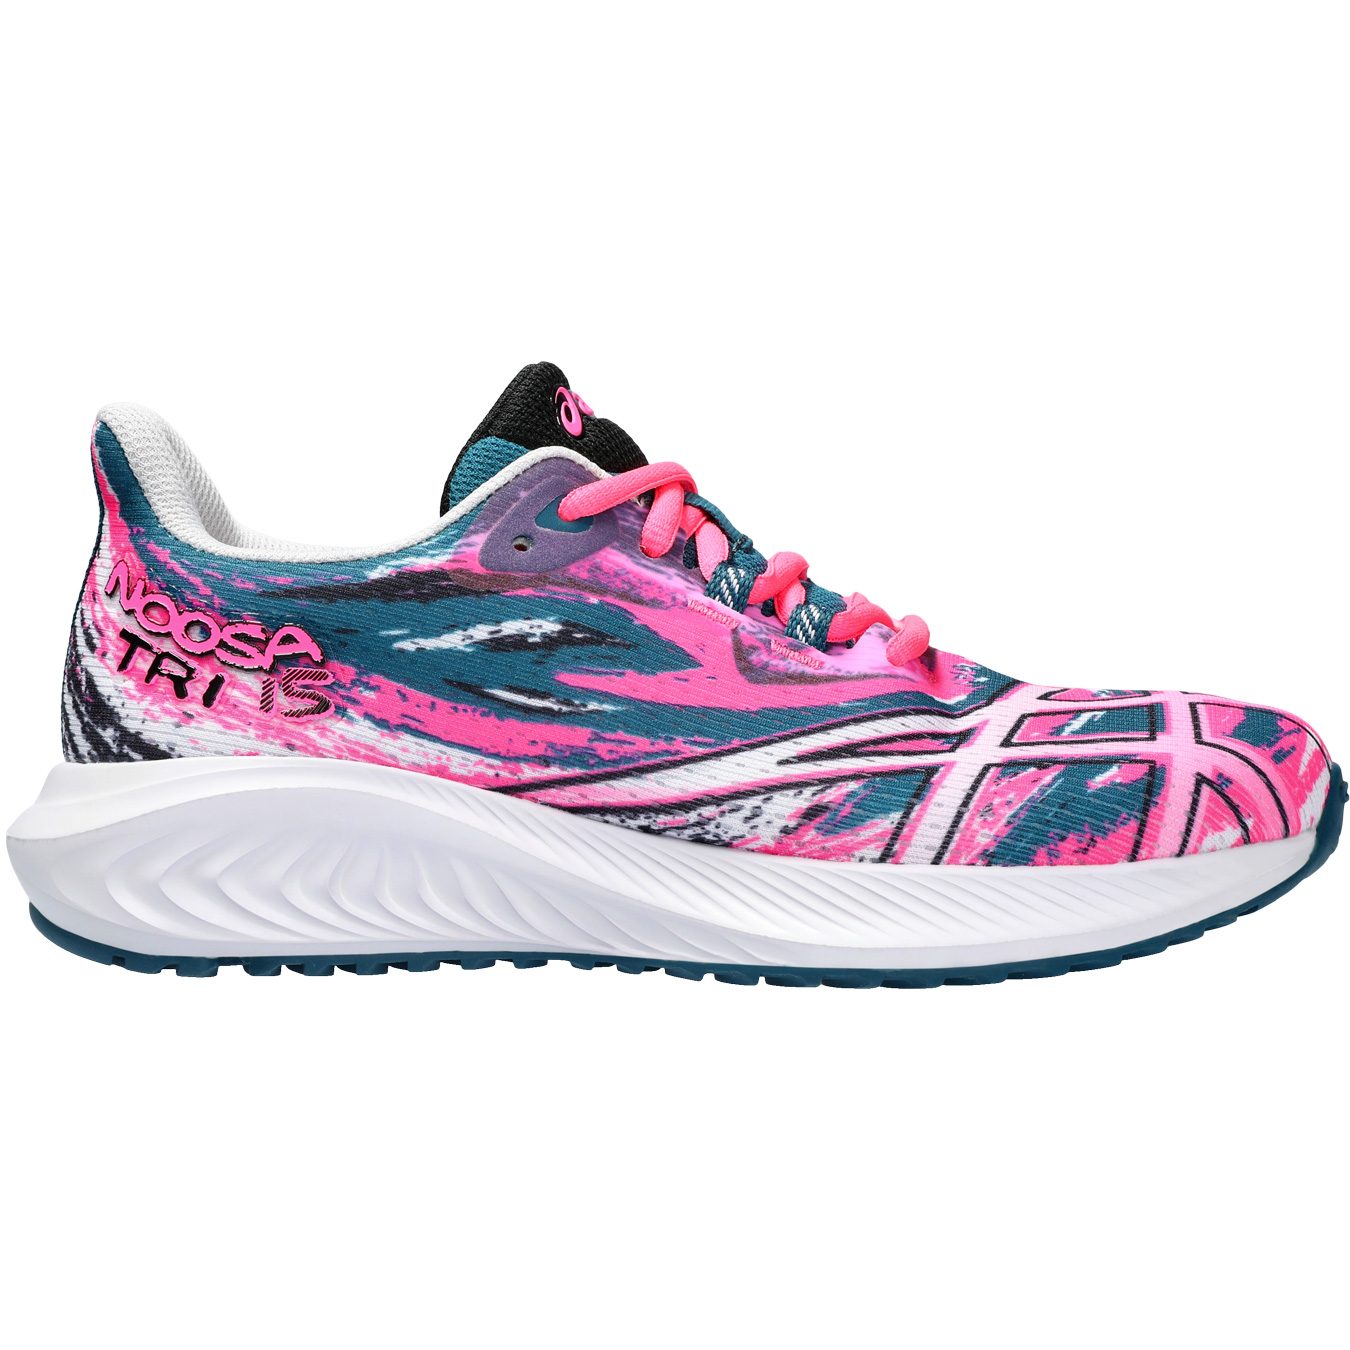 Gel-Noosa Bittl TRI Running Shoes - ASICS 15 GS pink Sport at Kids hot Shop